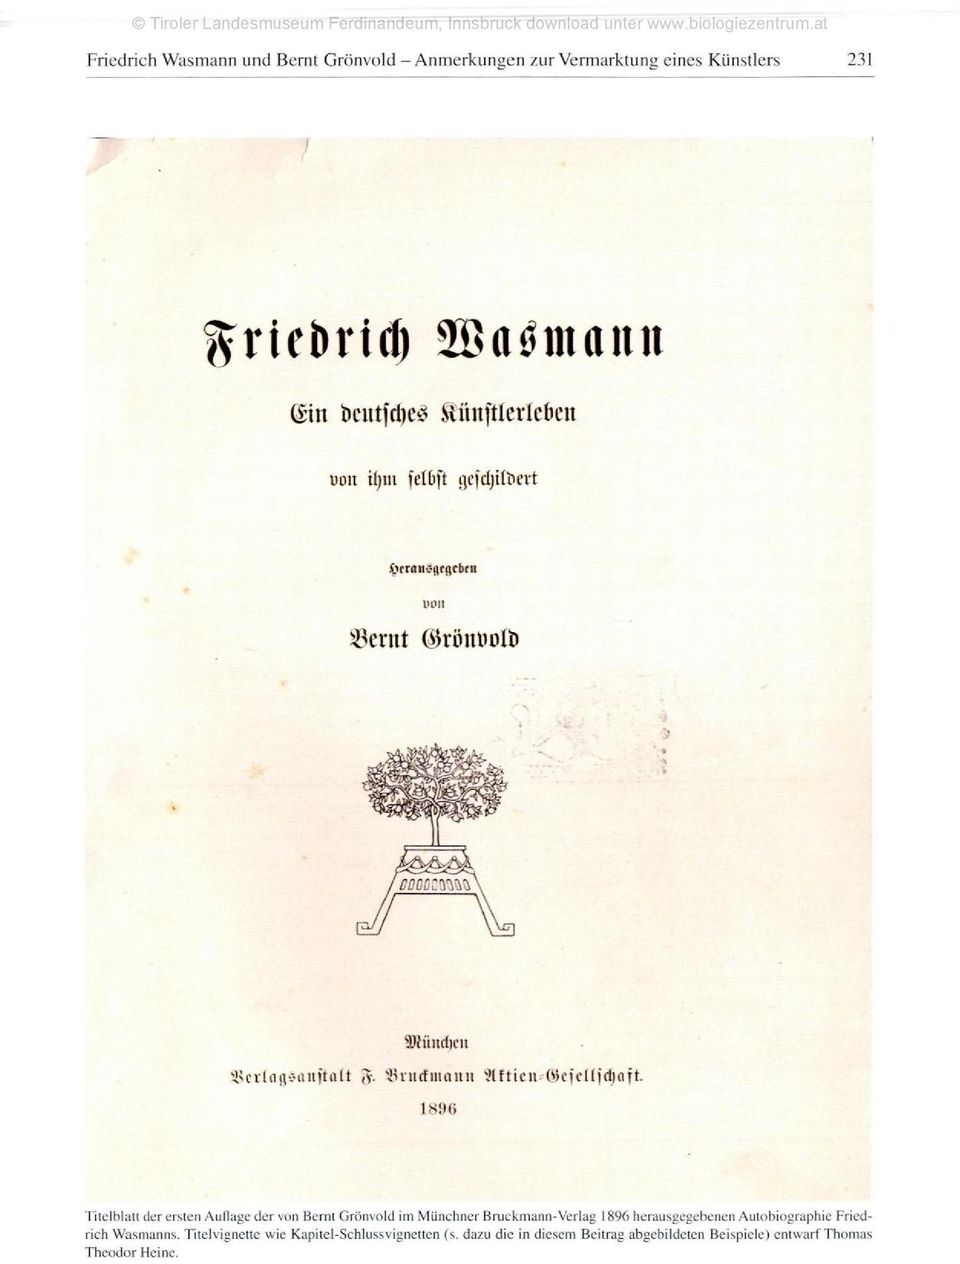 von Bernt Grönvold im Münchner Bruckmann-Verlag 1896 herausgegebenen Autobiographie Friedrich Wastnanns.